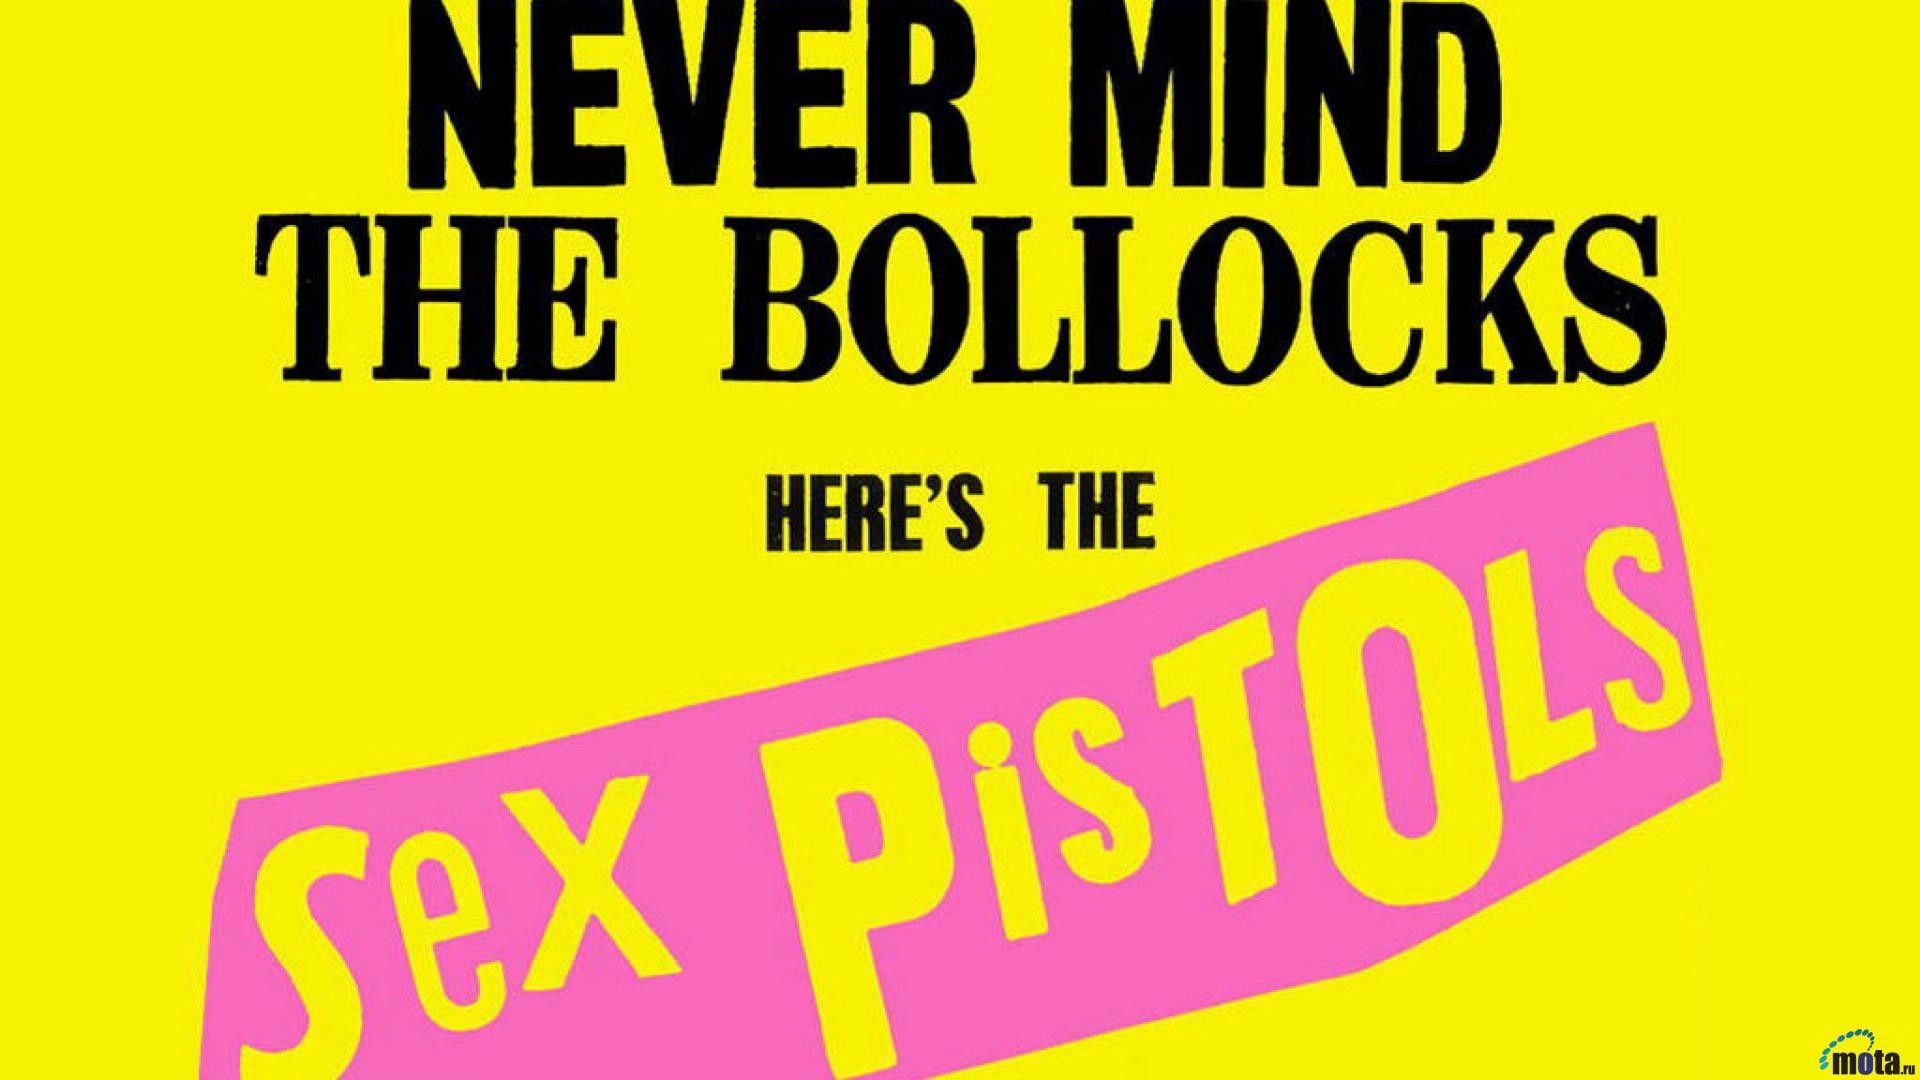 Sex Pistols Wallpaper